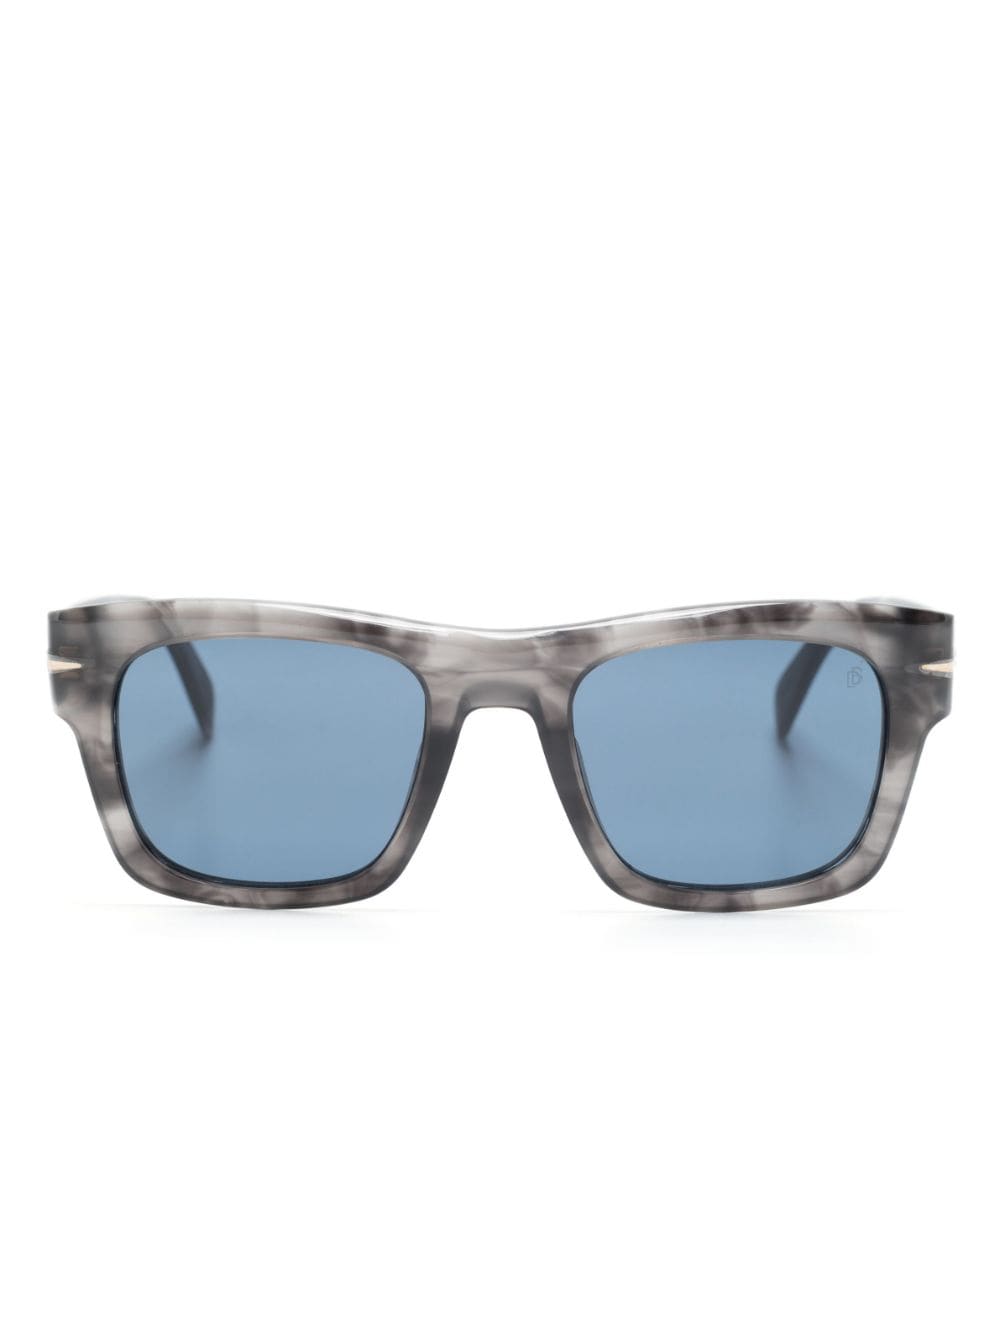 Eyewear by David Beckham marbled square-frame sunglasses - Grey von Eyewear by David Beckham